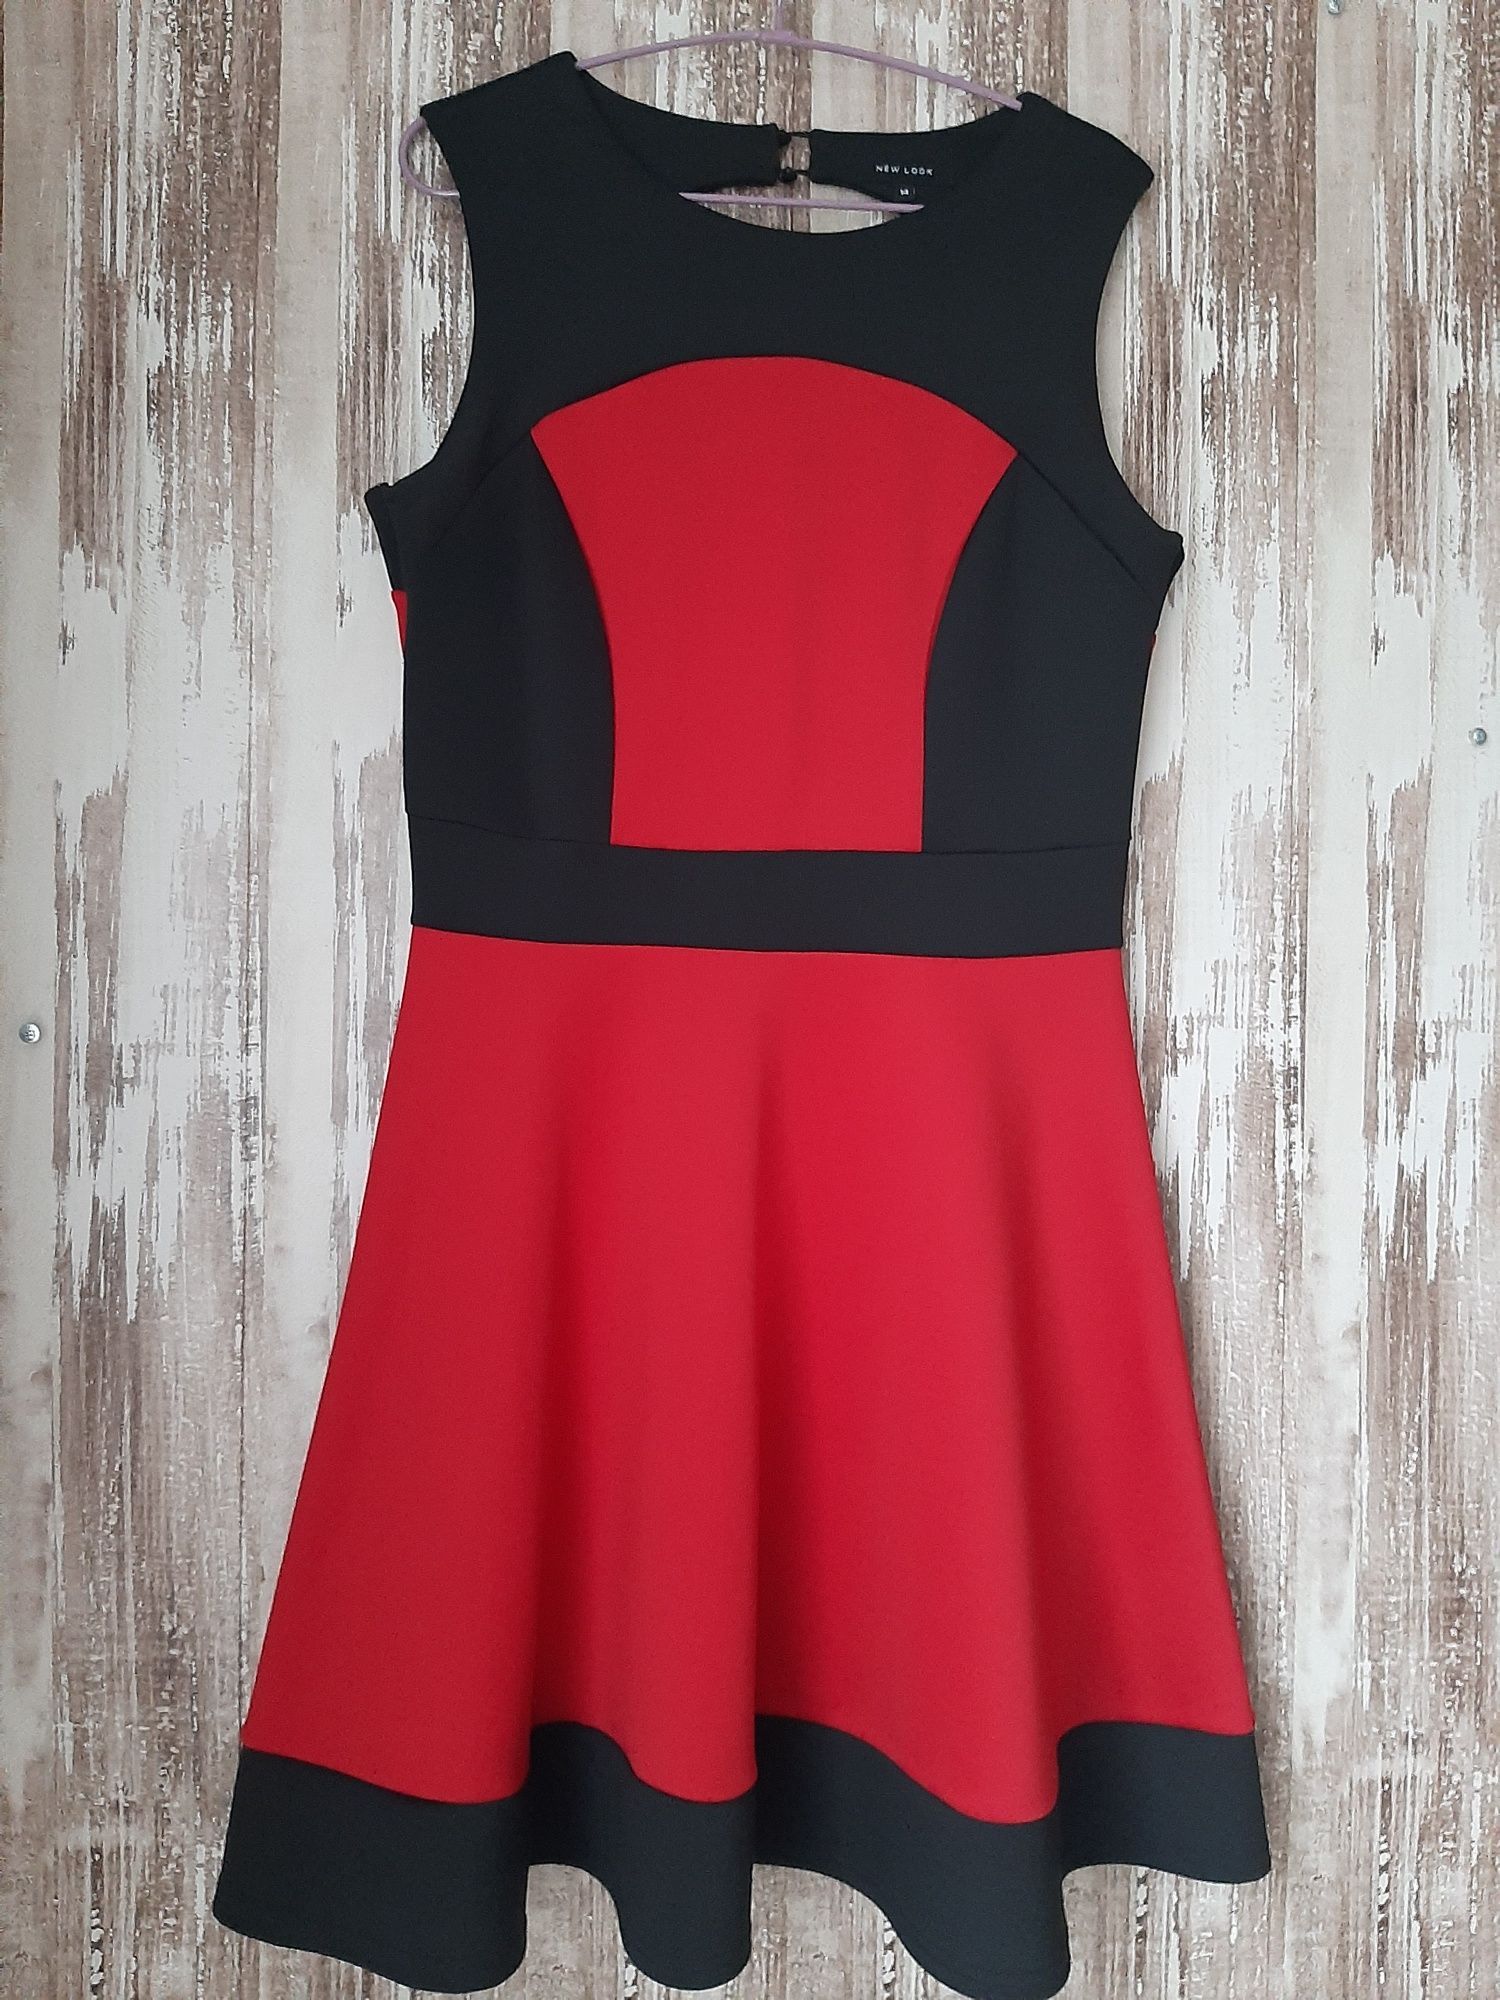 Черно- красное классическое платье. Красивое декольте, расклешенное)